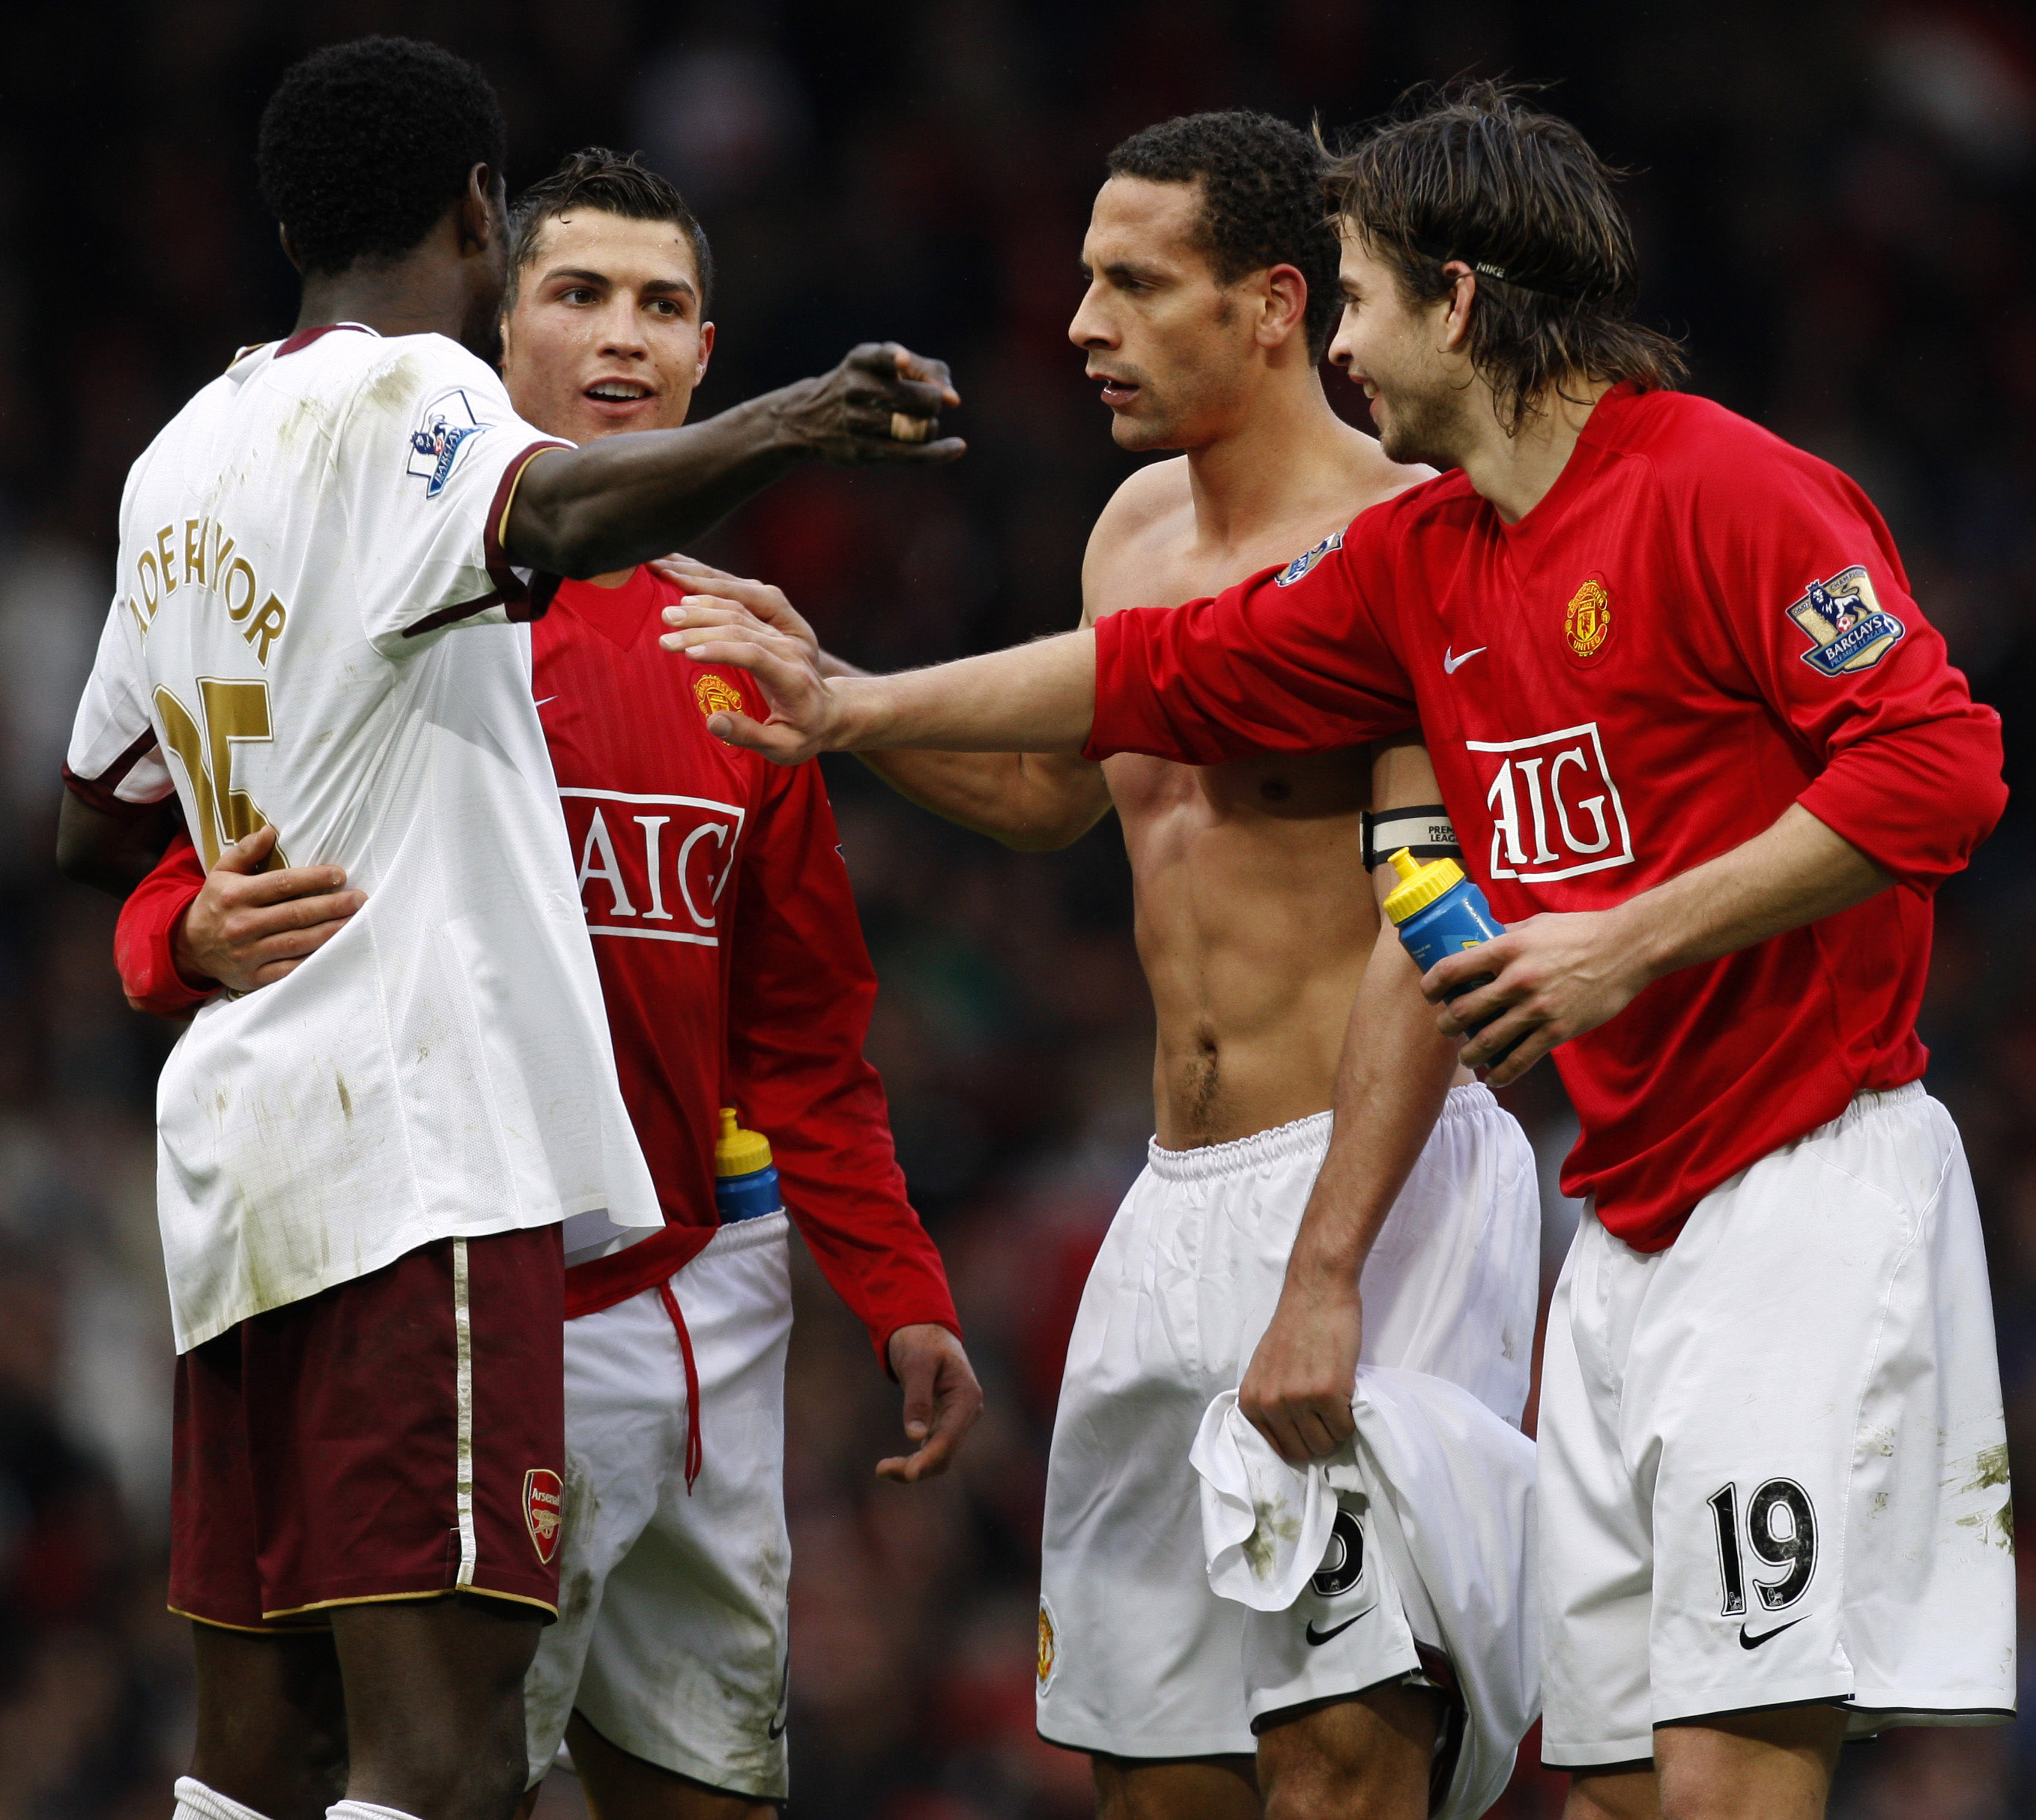 De spelade även tillsammans under tre år i Manchester United.